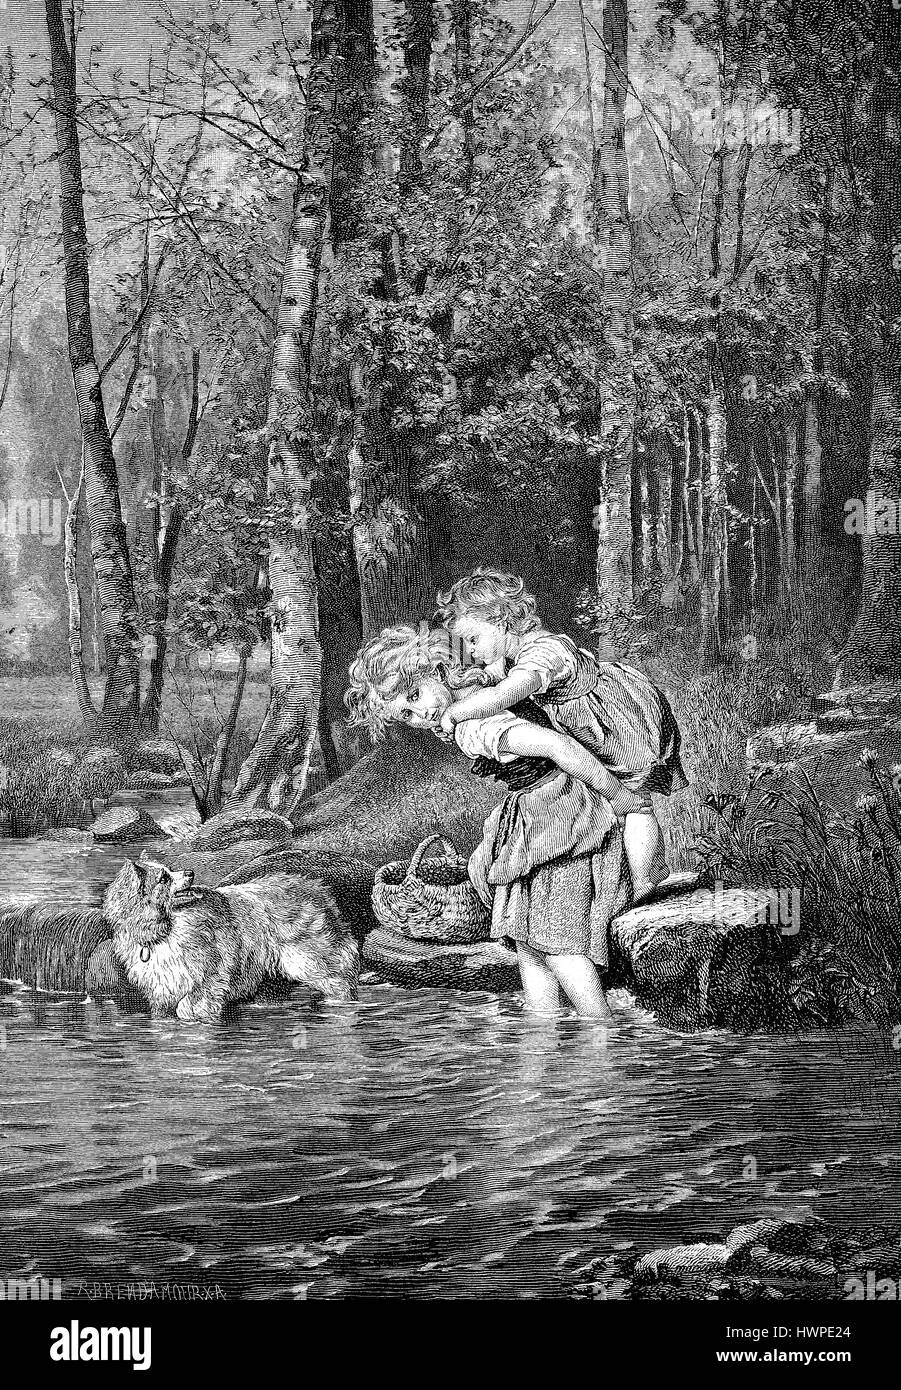 Le ragazze portano sorellina piggy-back attraverso un ruscello, riproduzione di un originale xilografia a partire dall'anno 1882, digitale migliorata Foto Stock